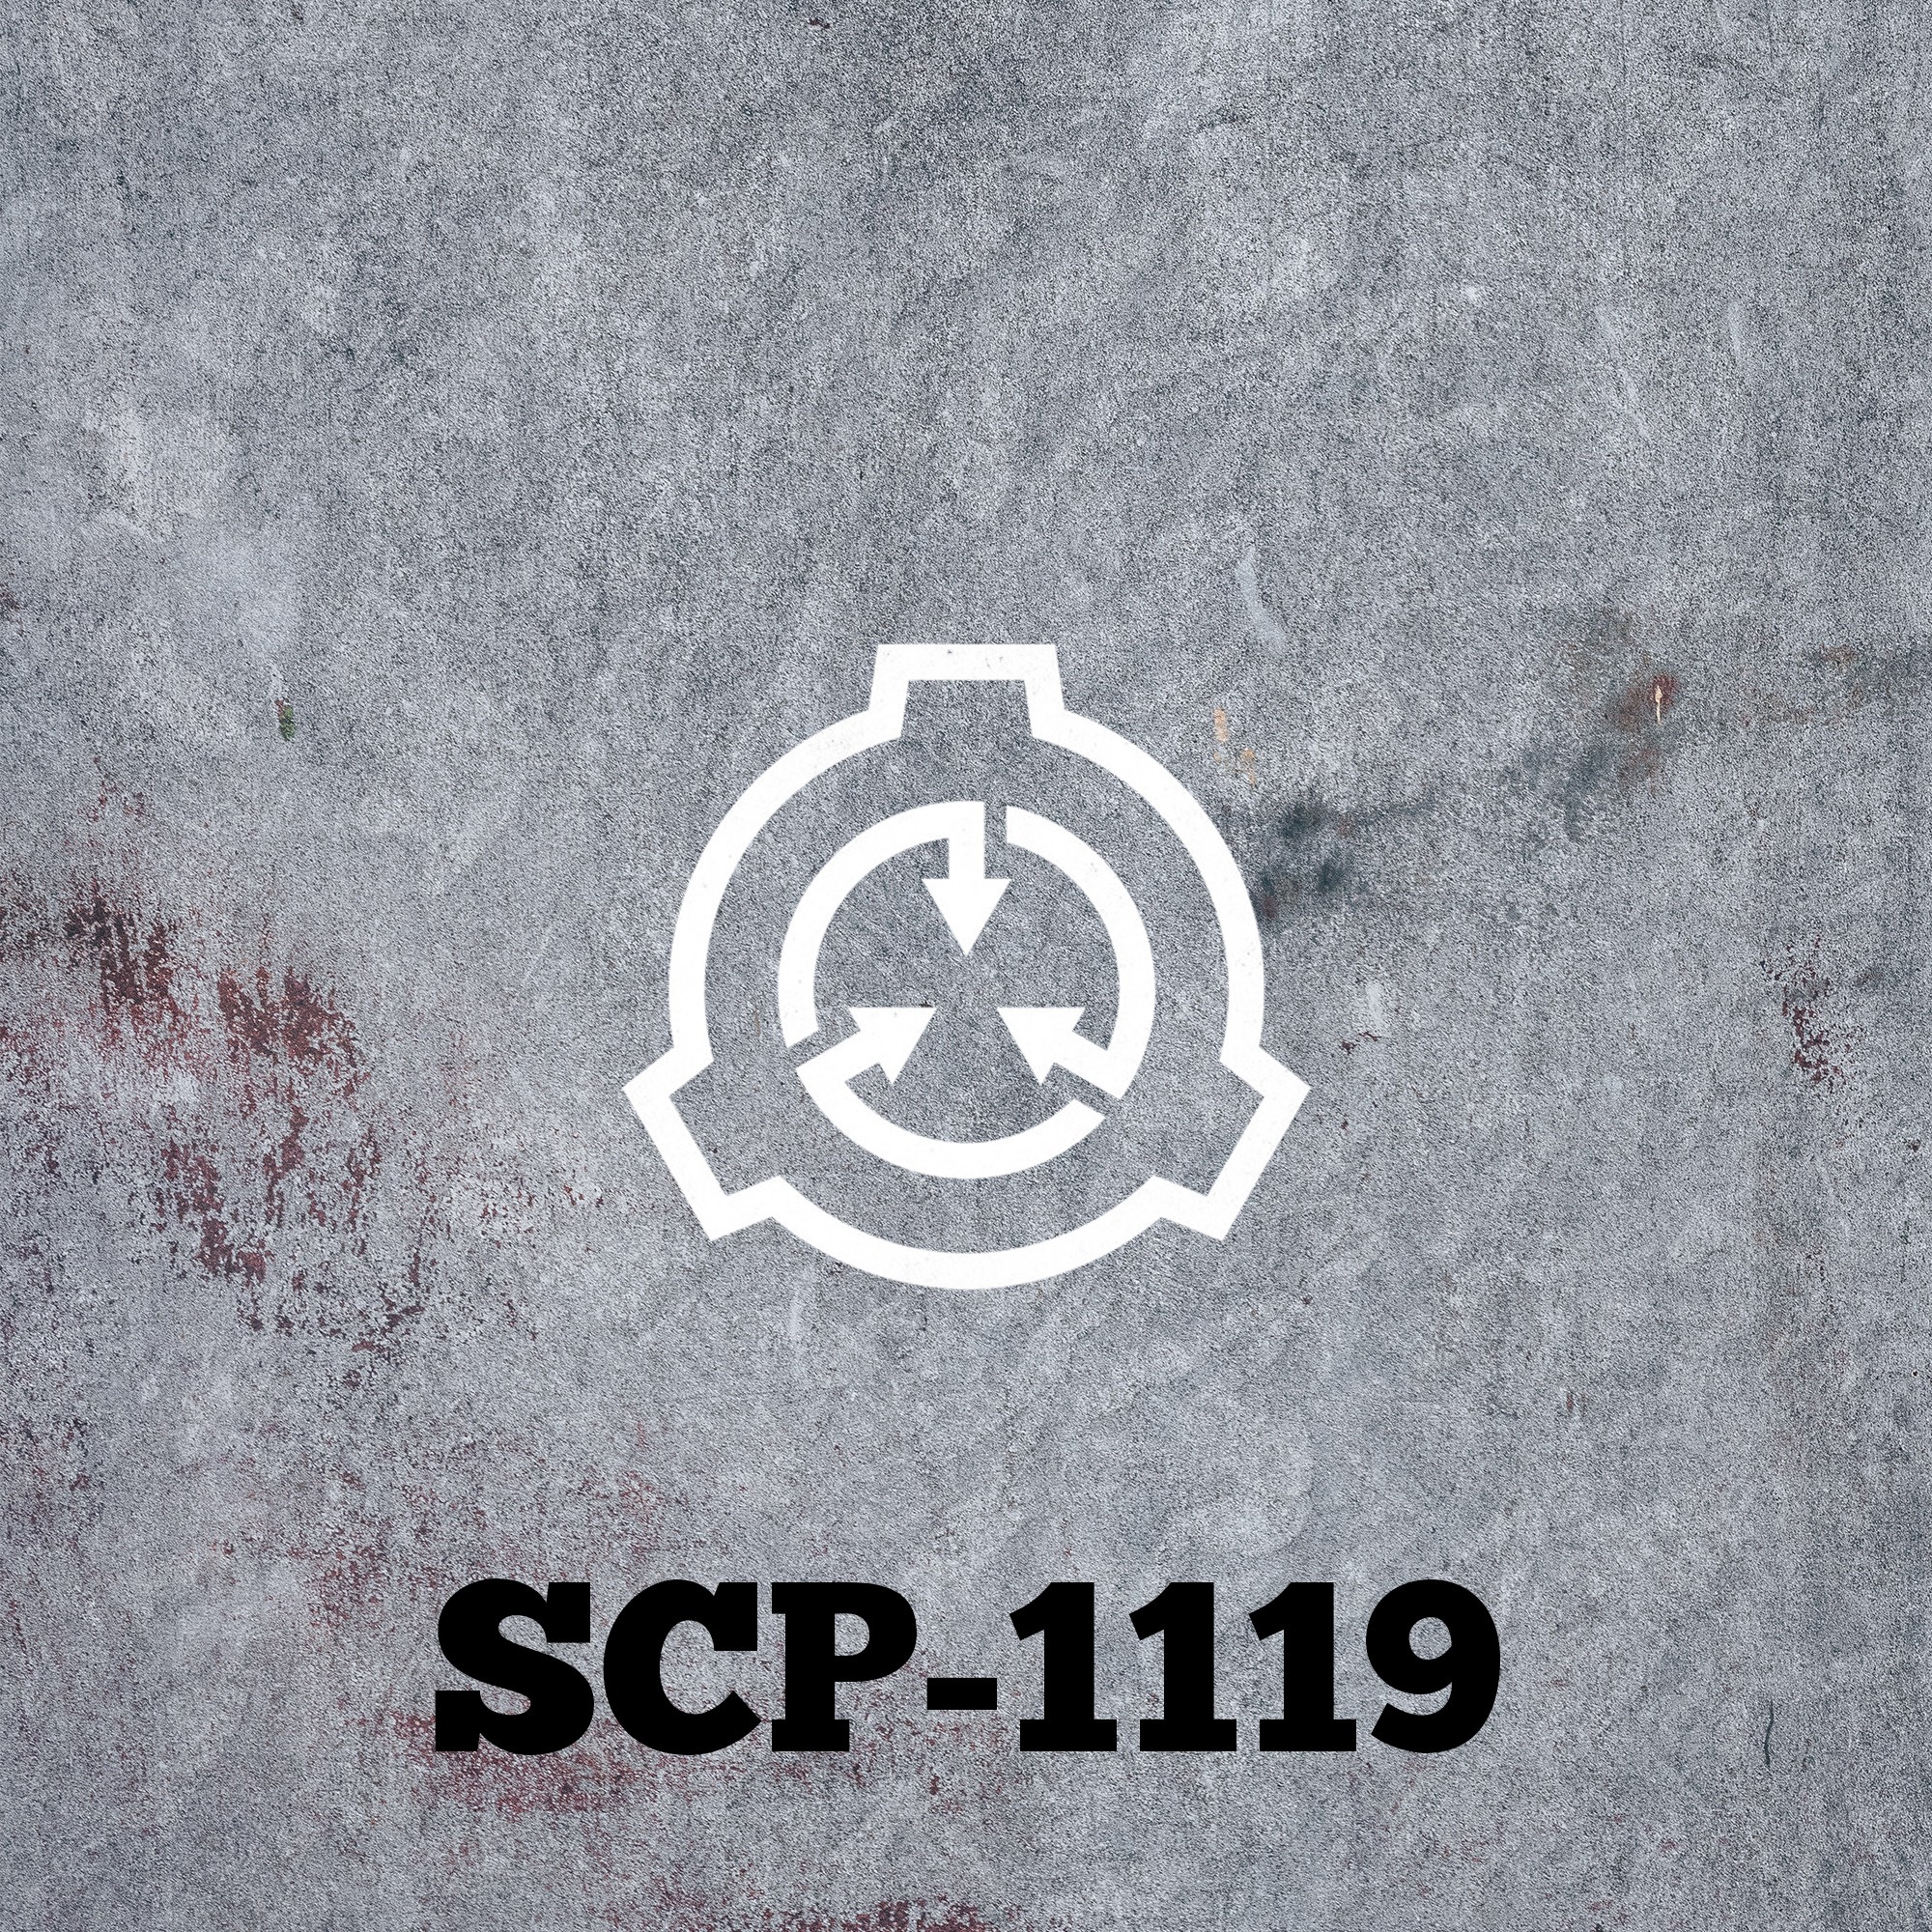 SCP-1119: No Touching